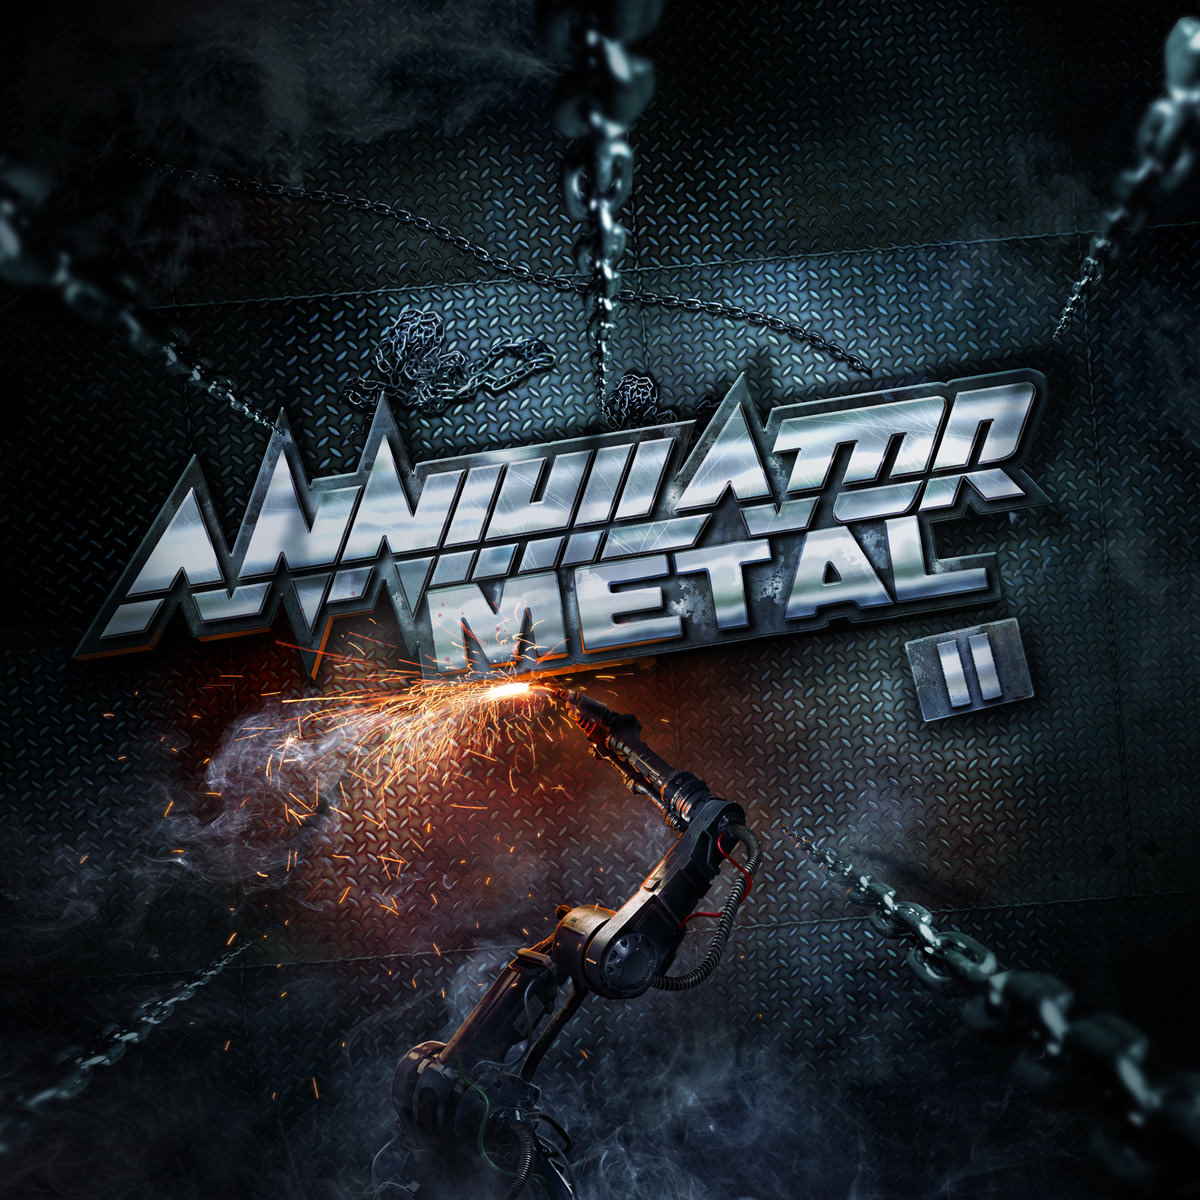 Annihilator - Metal (reedición)